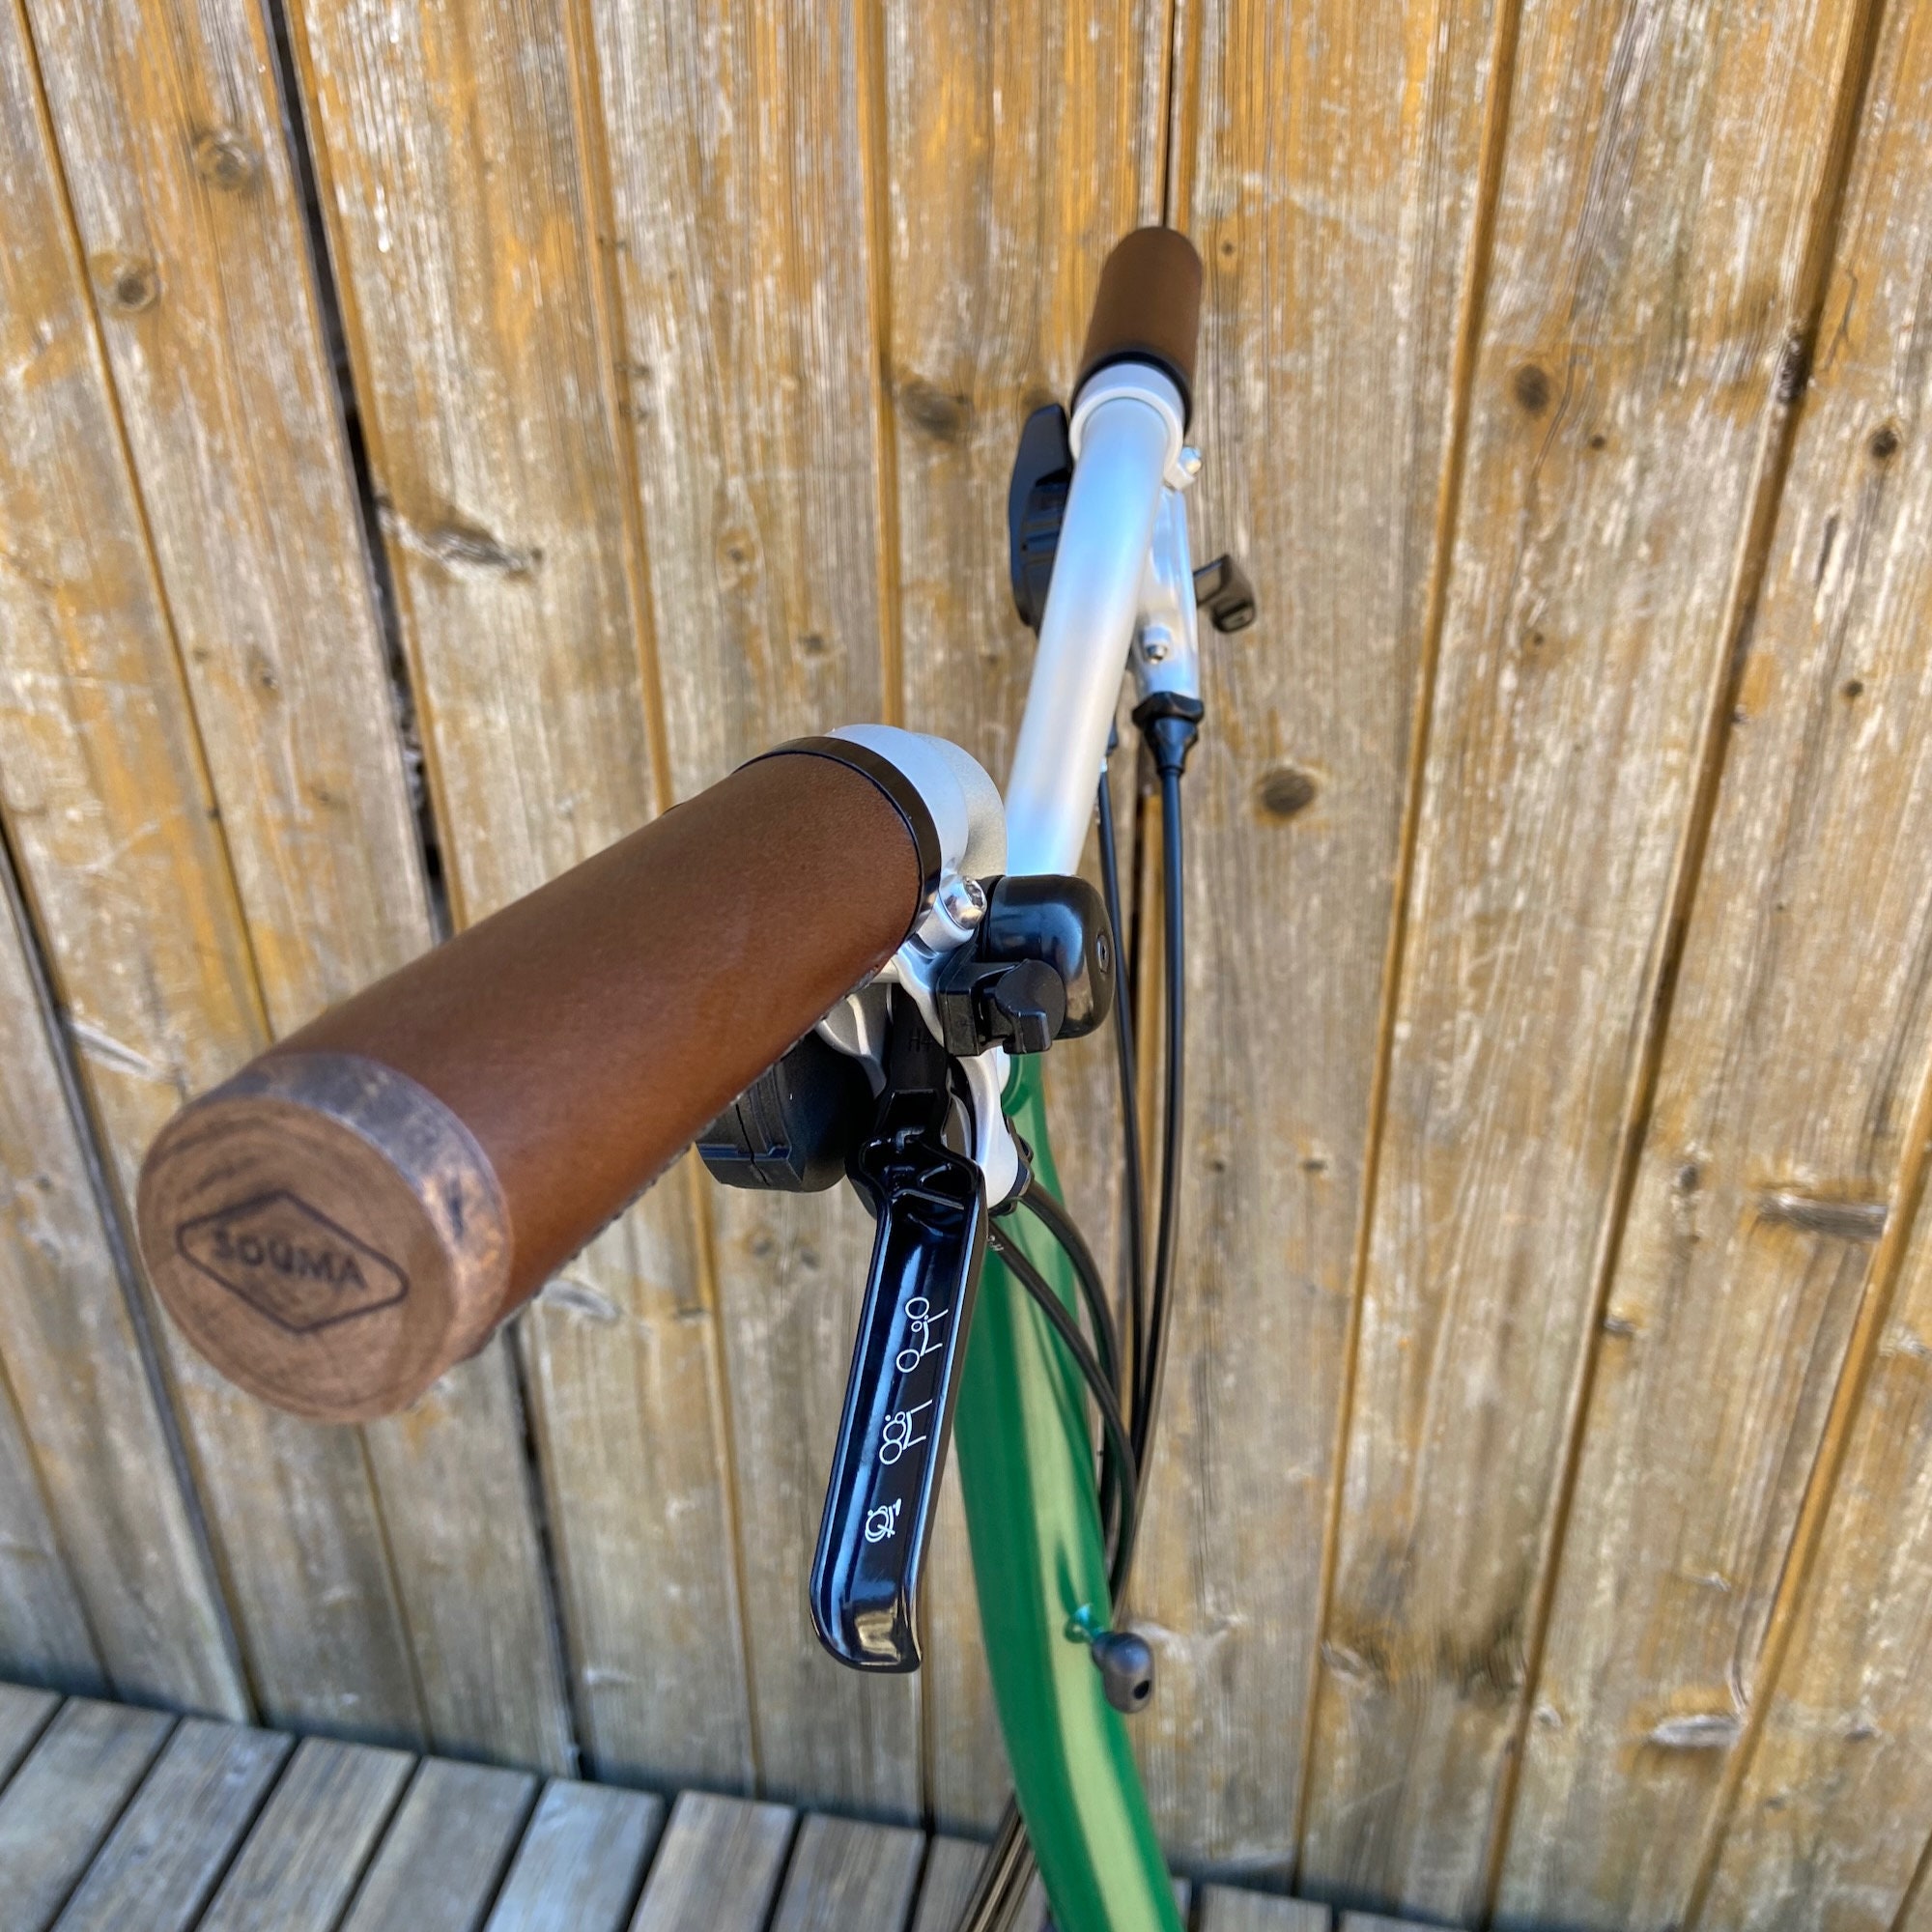 Poignée de guidon de vélo durable poignées à main caoutchouc souple pour VTT